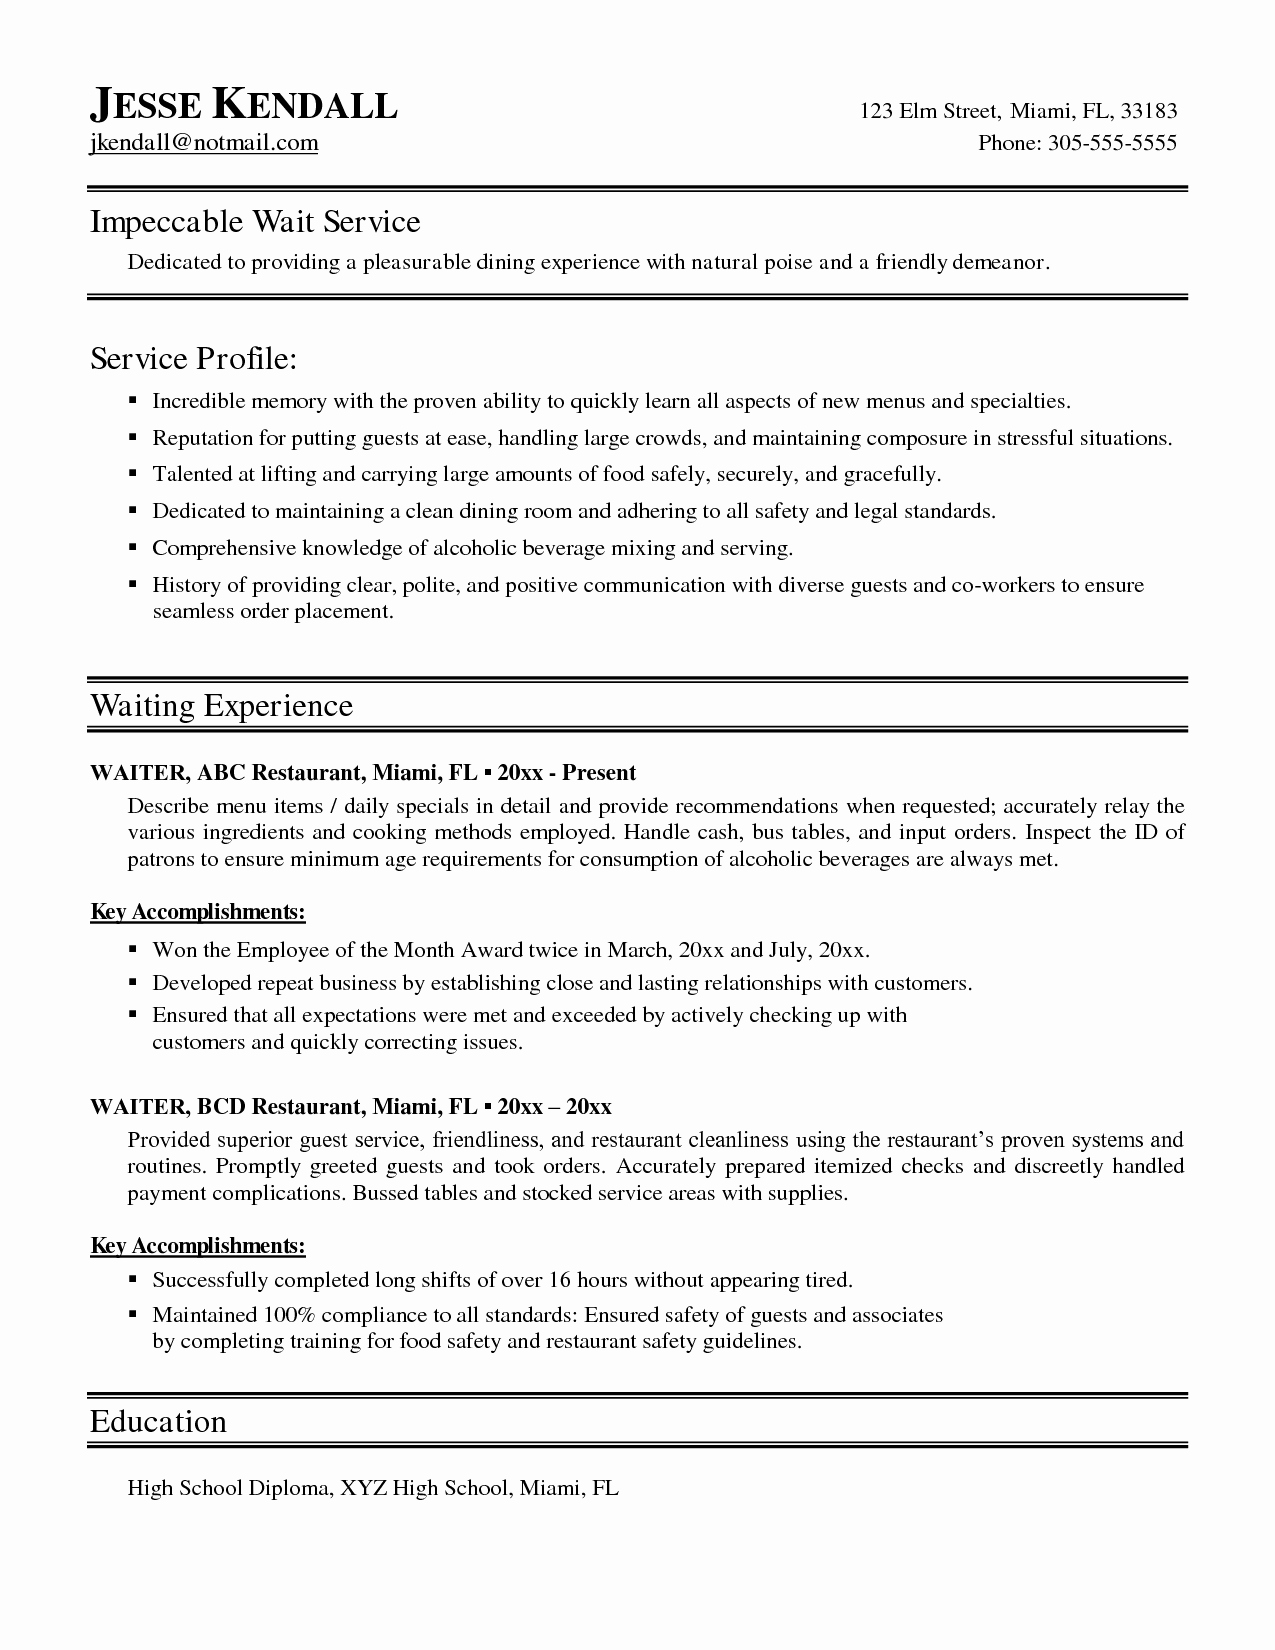 Sample Resume for Waitress Fresh Sample Waitress Resume Examples Resume